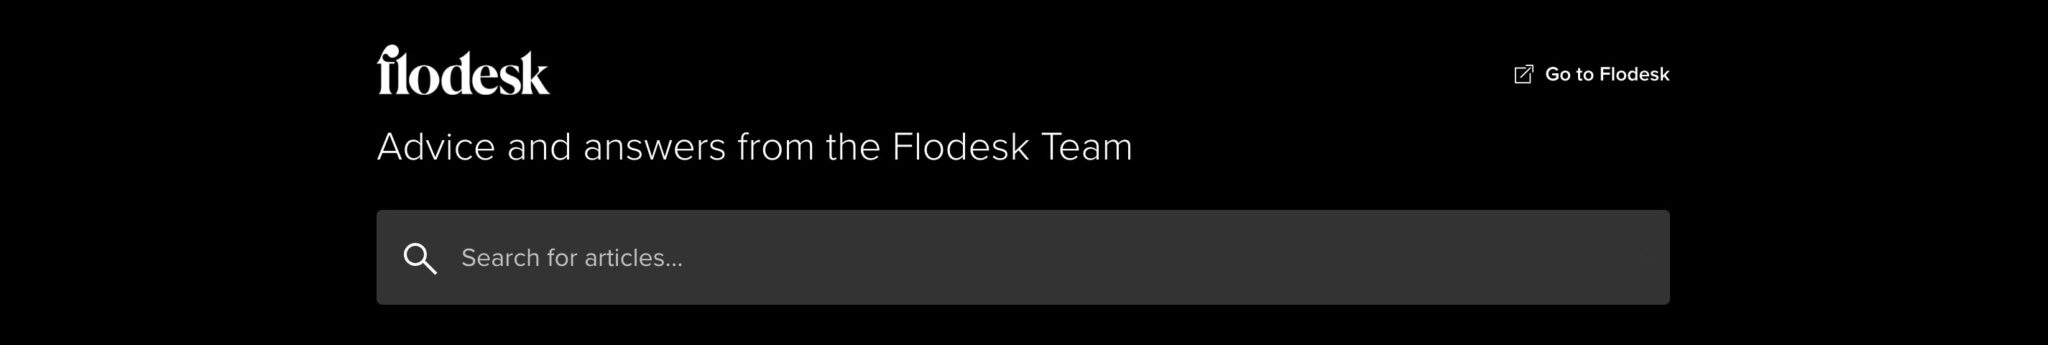 Flodesk customer support